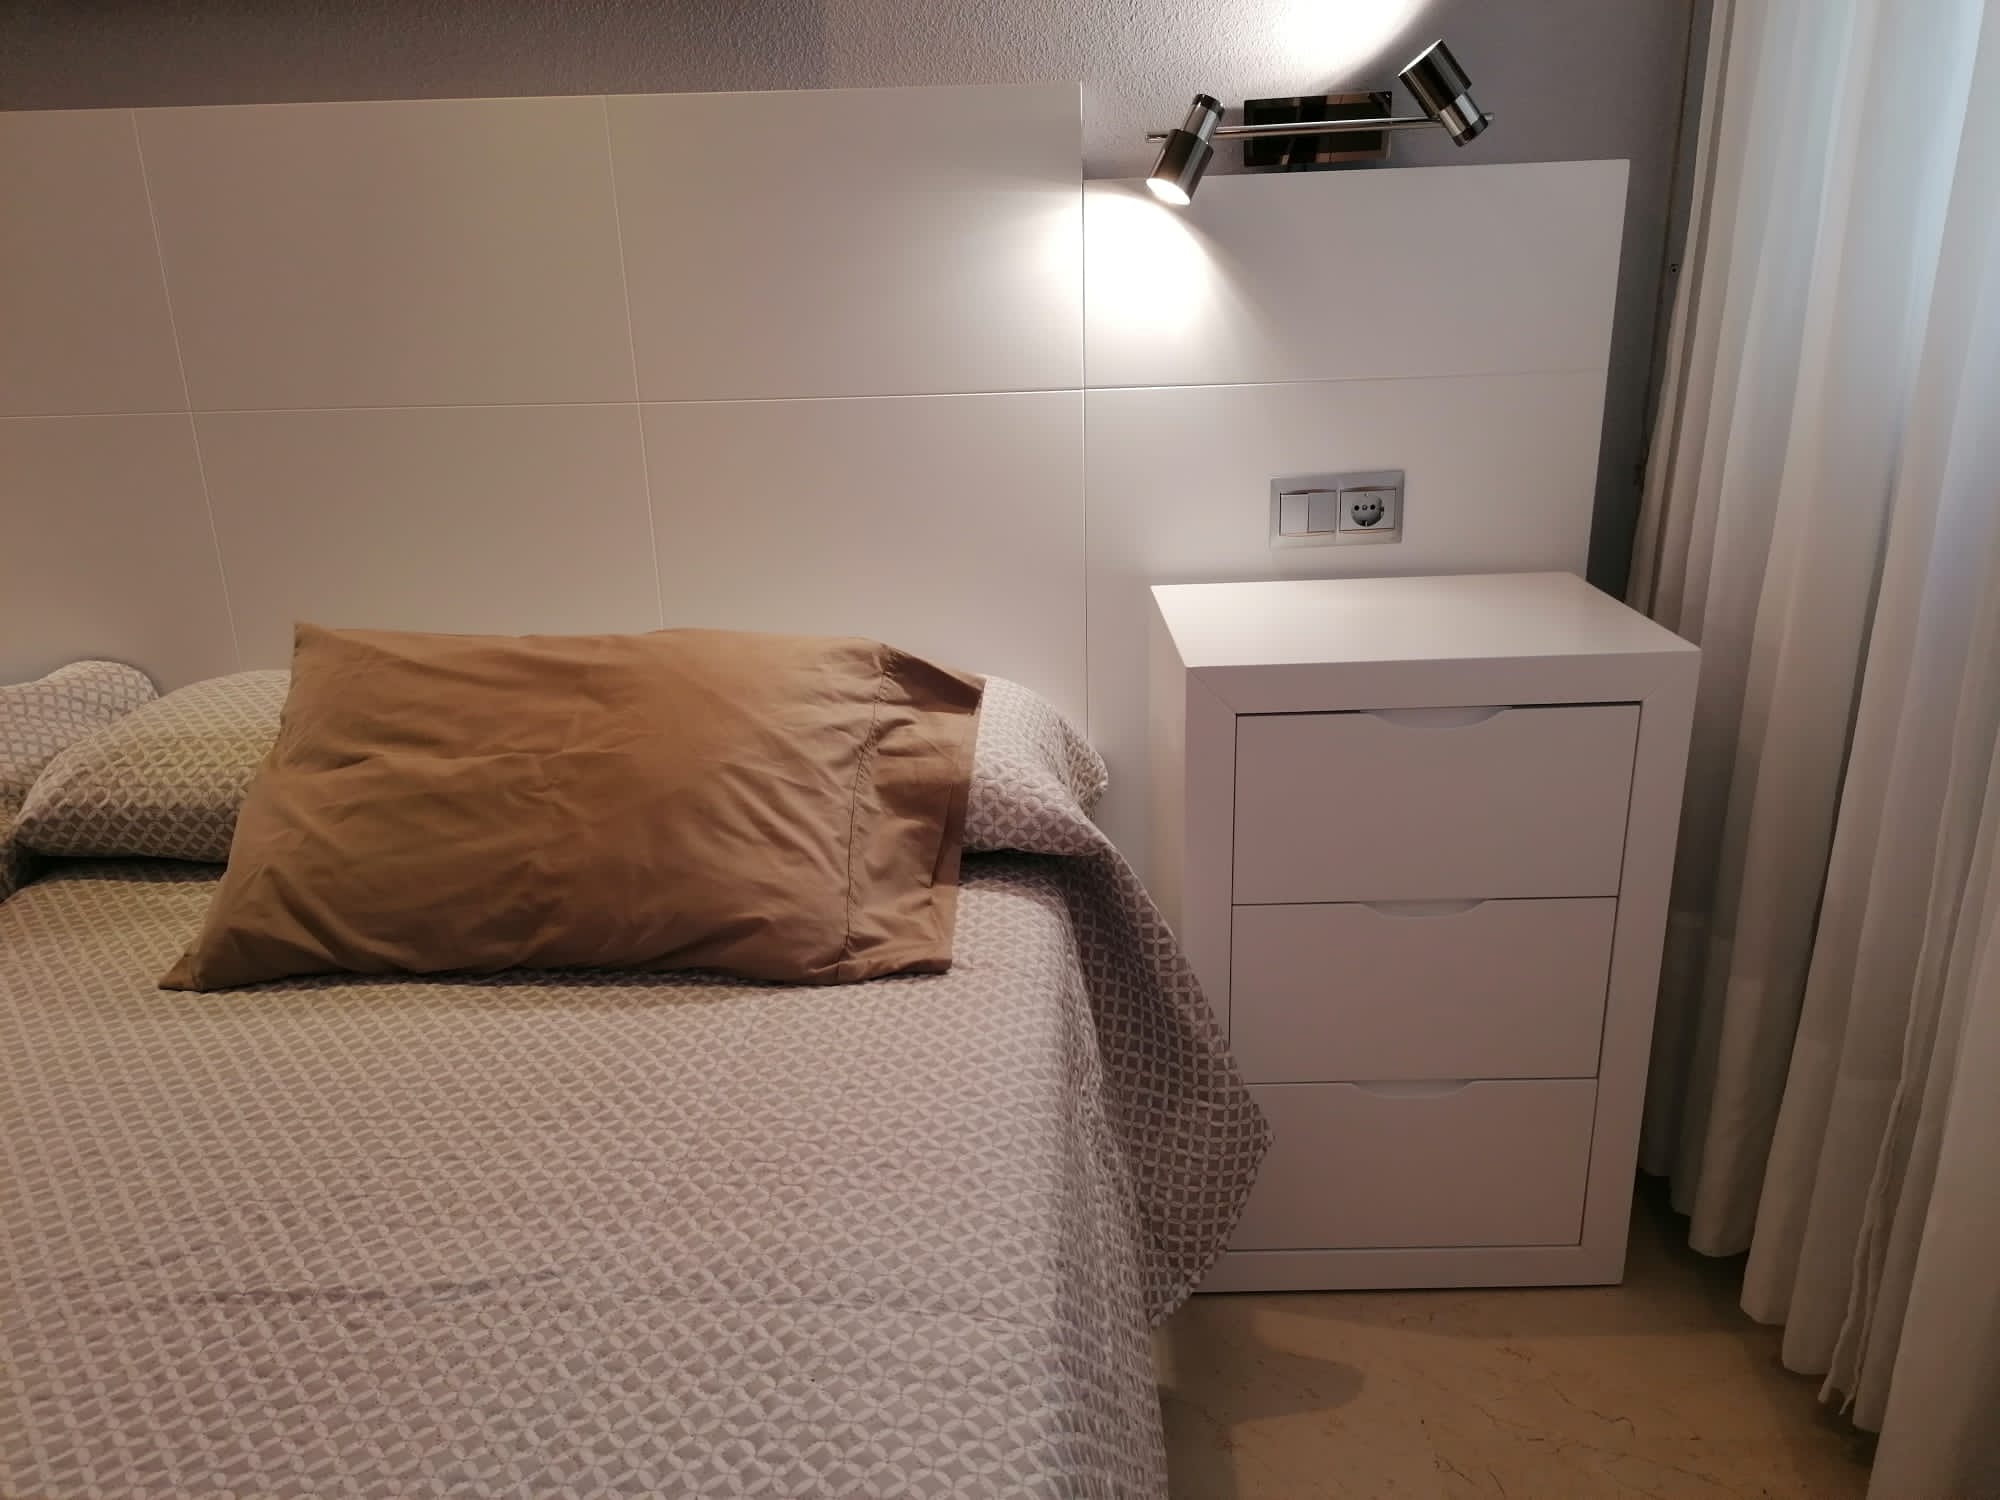 Dormitorio lacado en blanco con mil detalles